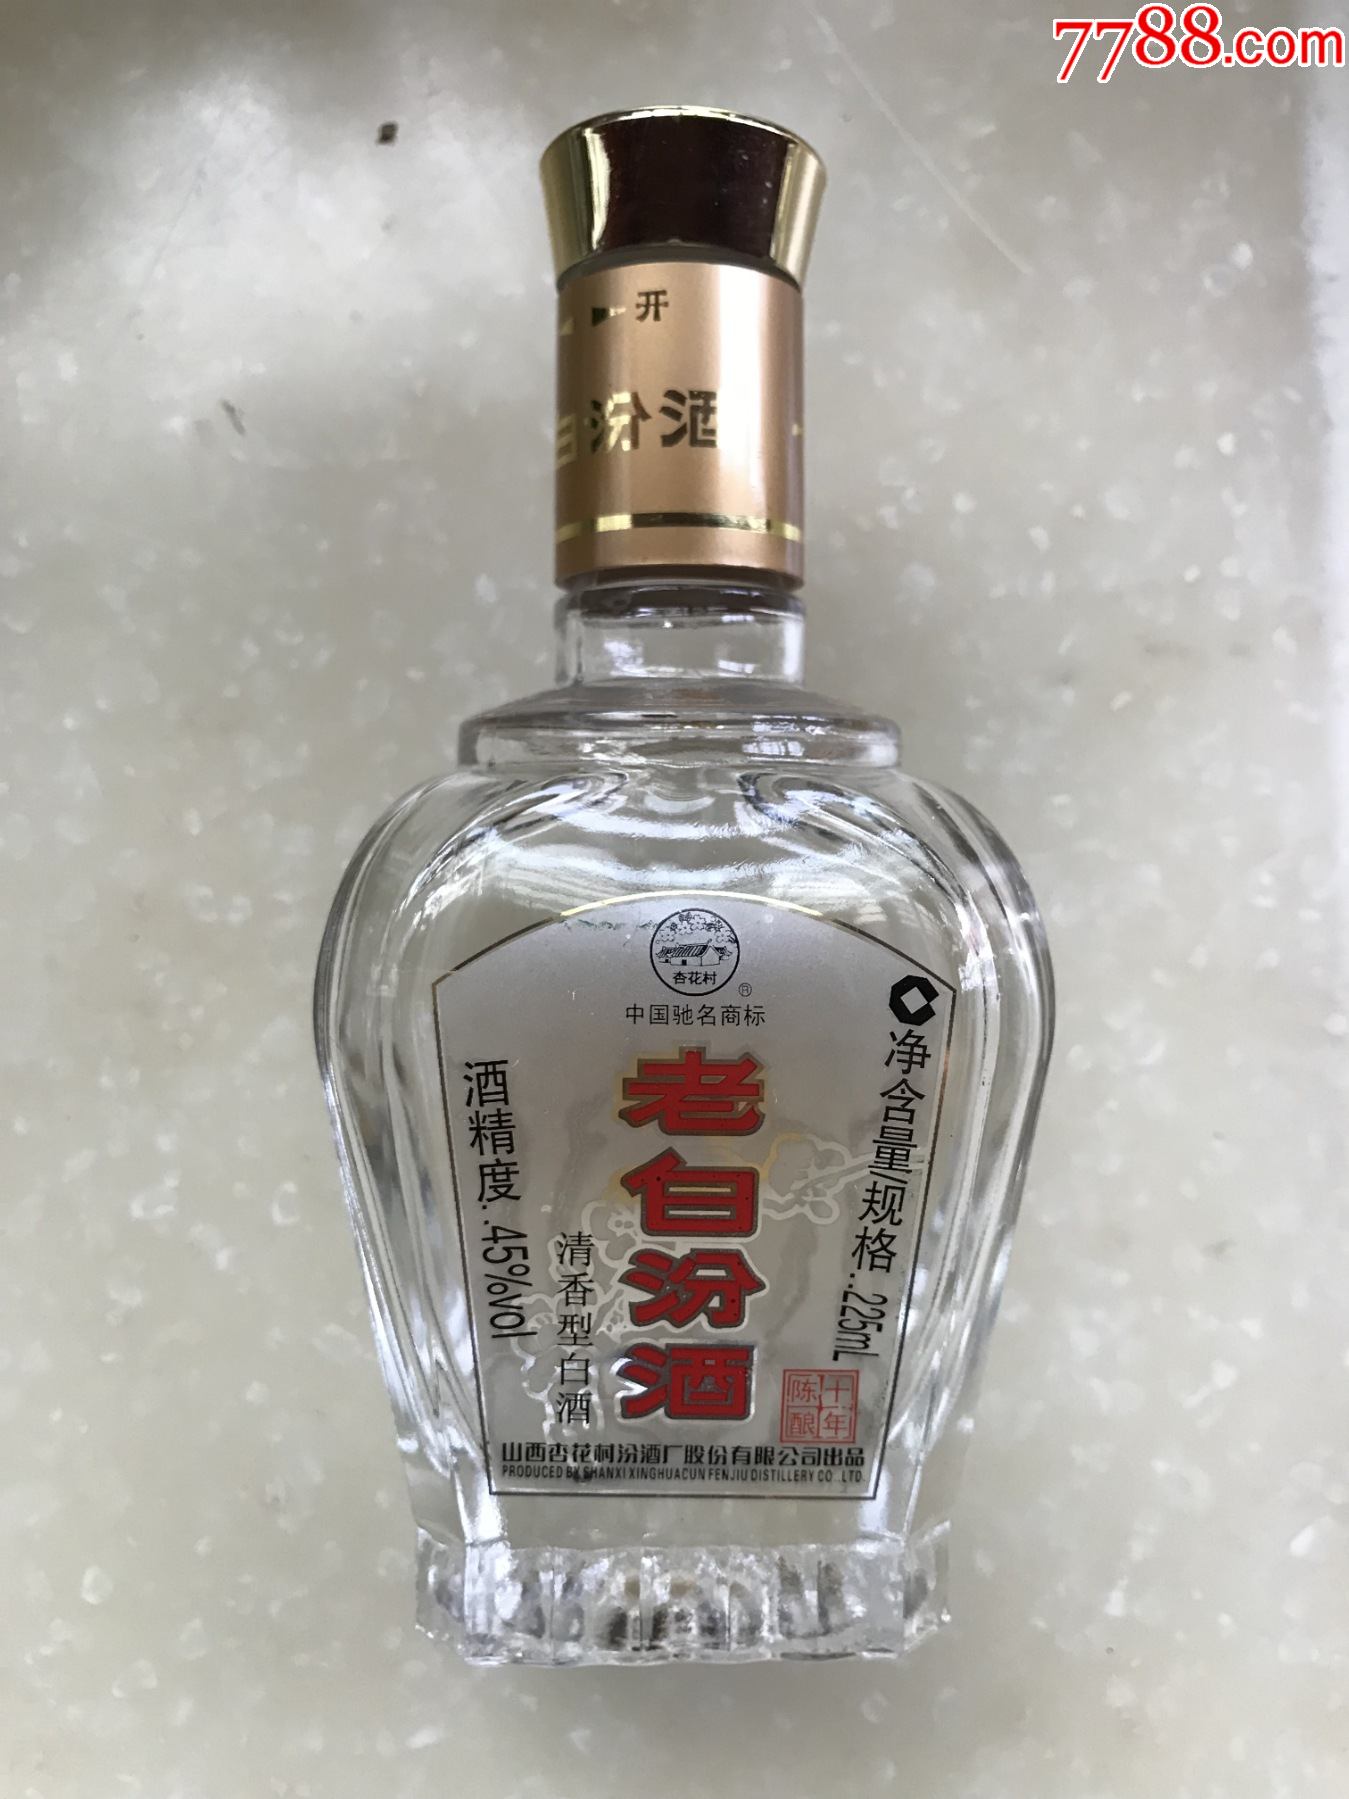 老白汾酒(45%vol,225ml)——空瓶